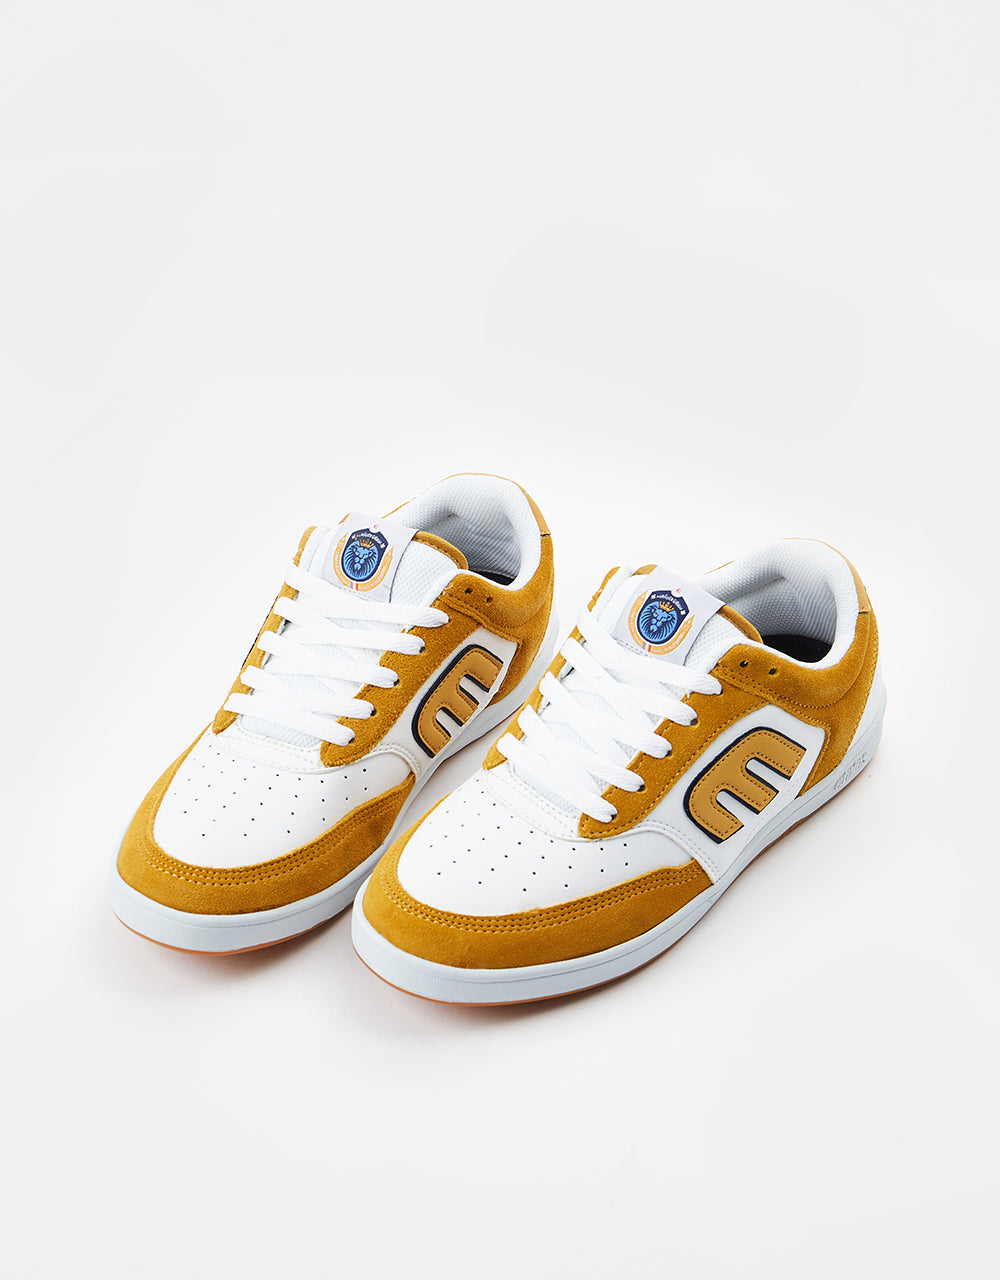 Etnies The Aurelien Skate Shoes - Tan/White